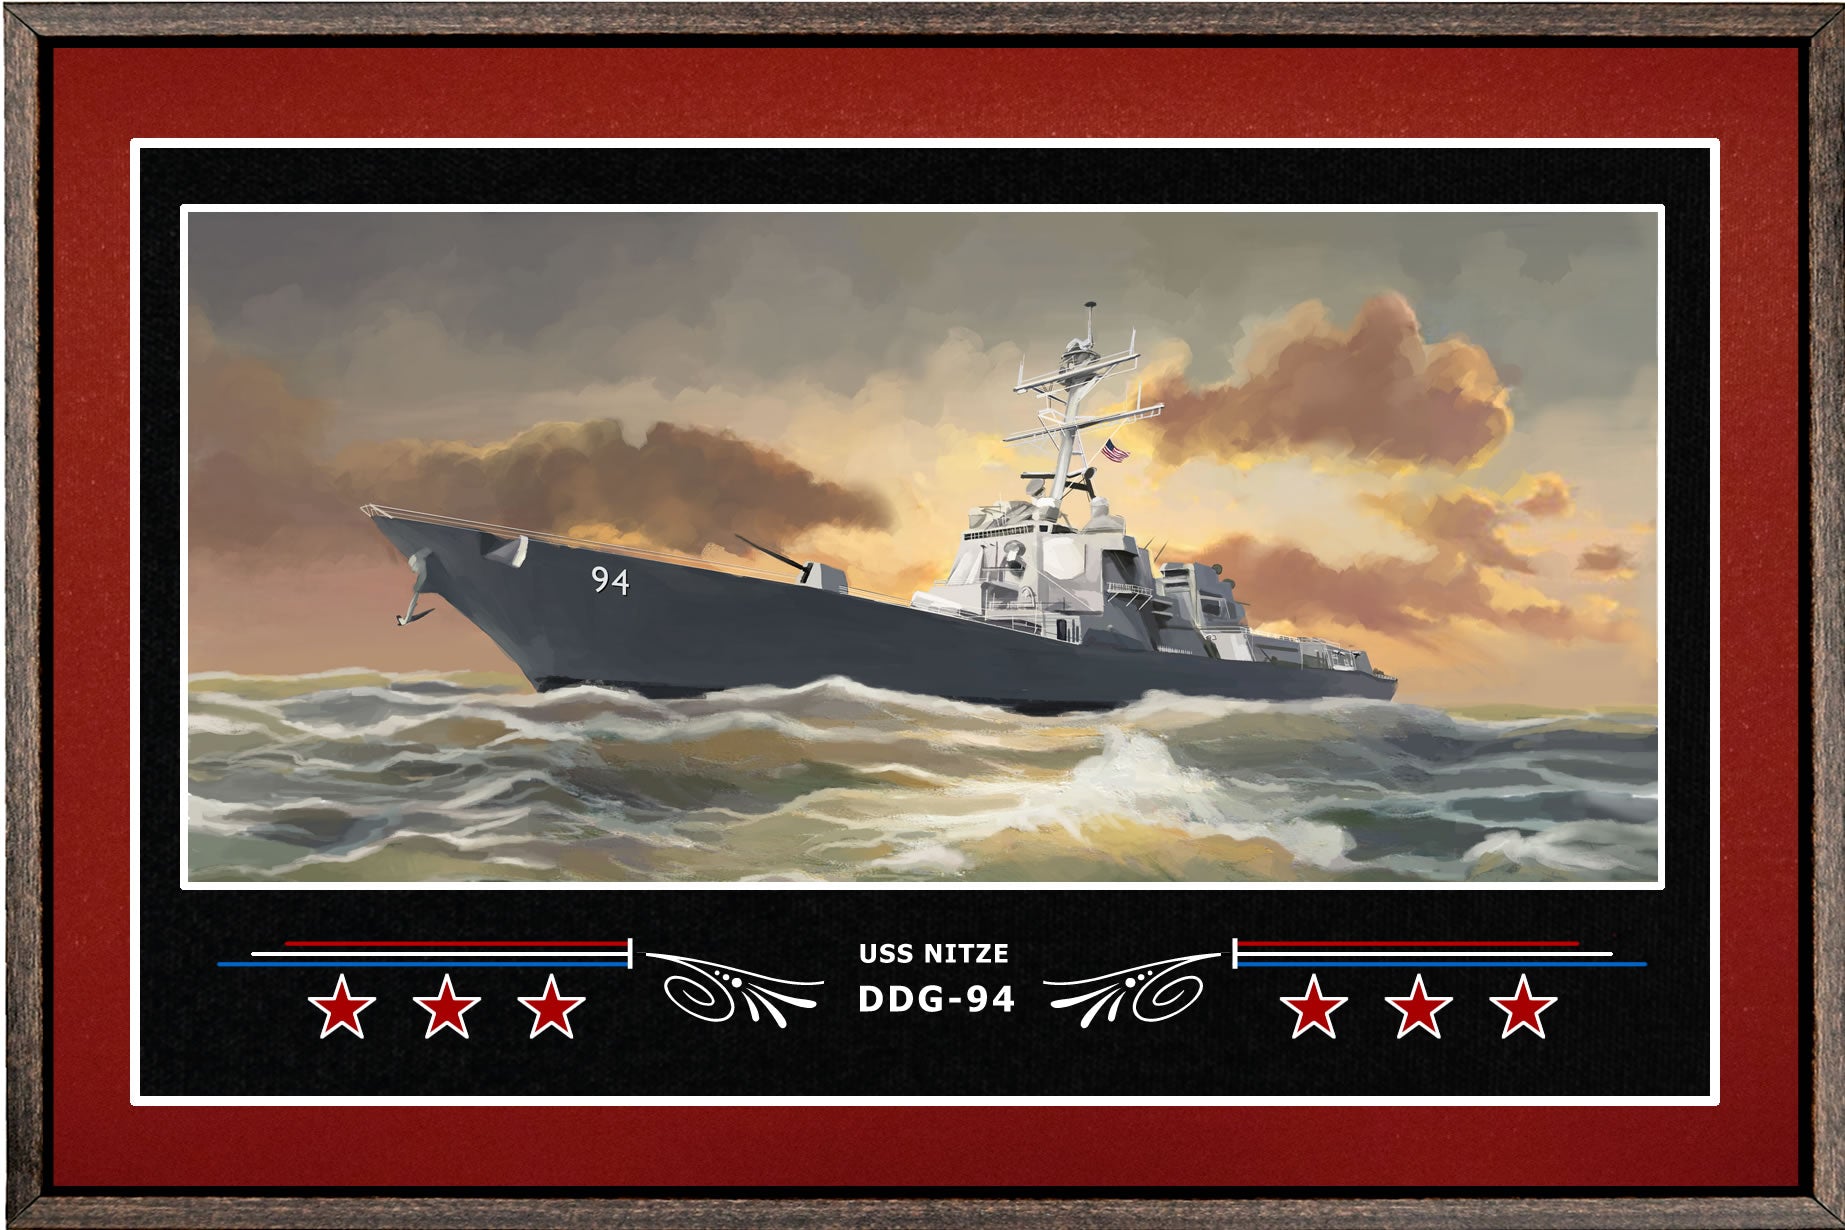 USS NITZE DDG 94 BOX FRAMED CANVAS ART BURGUNDY